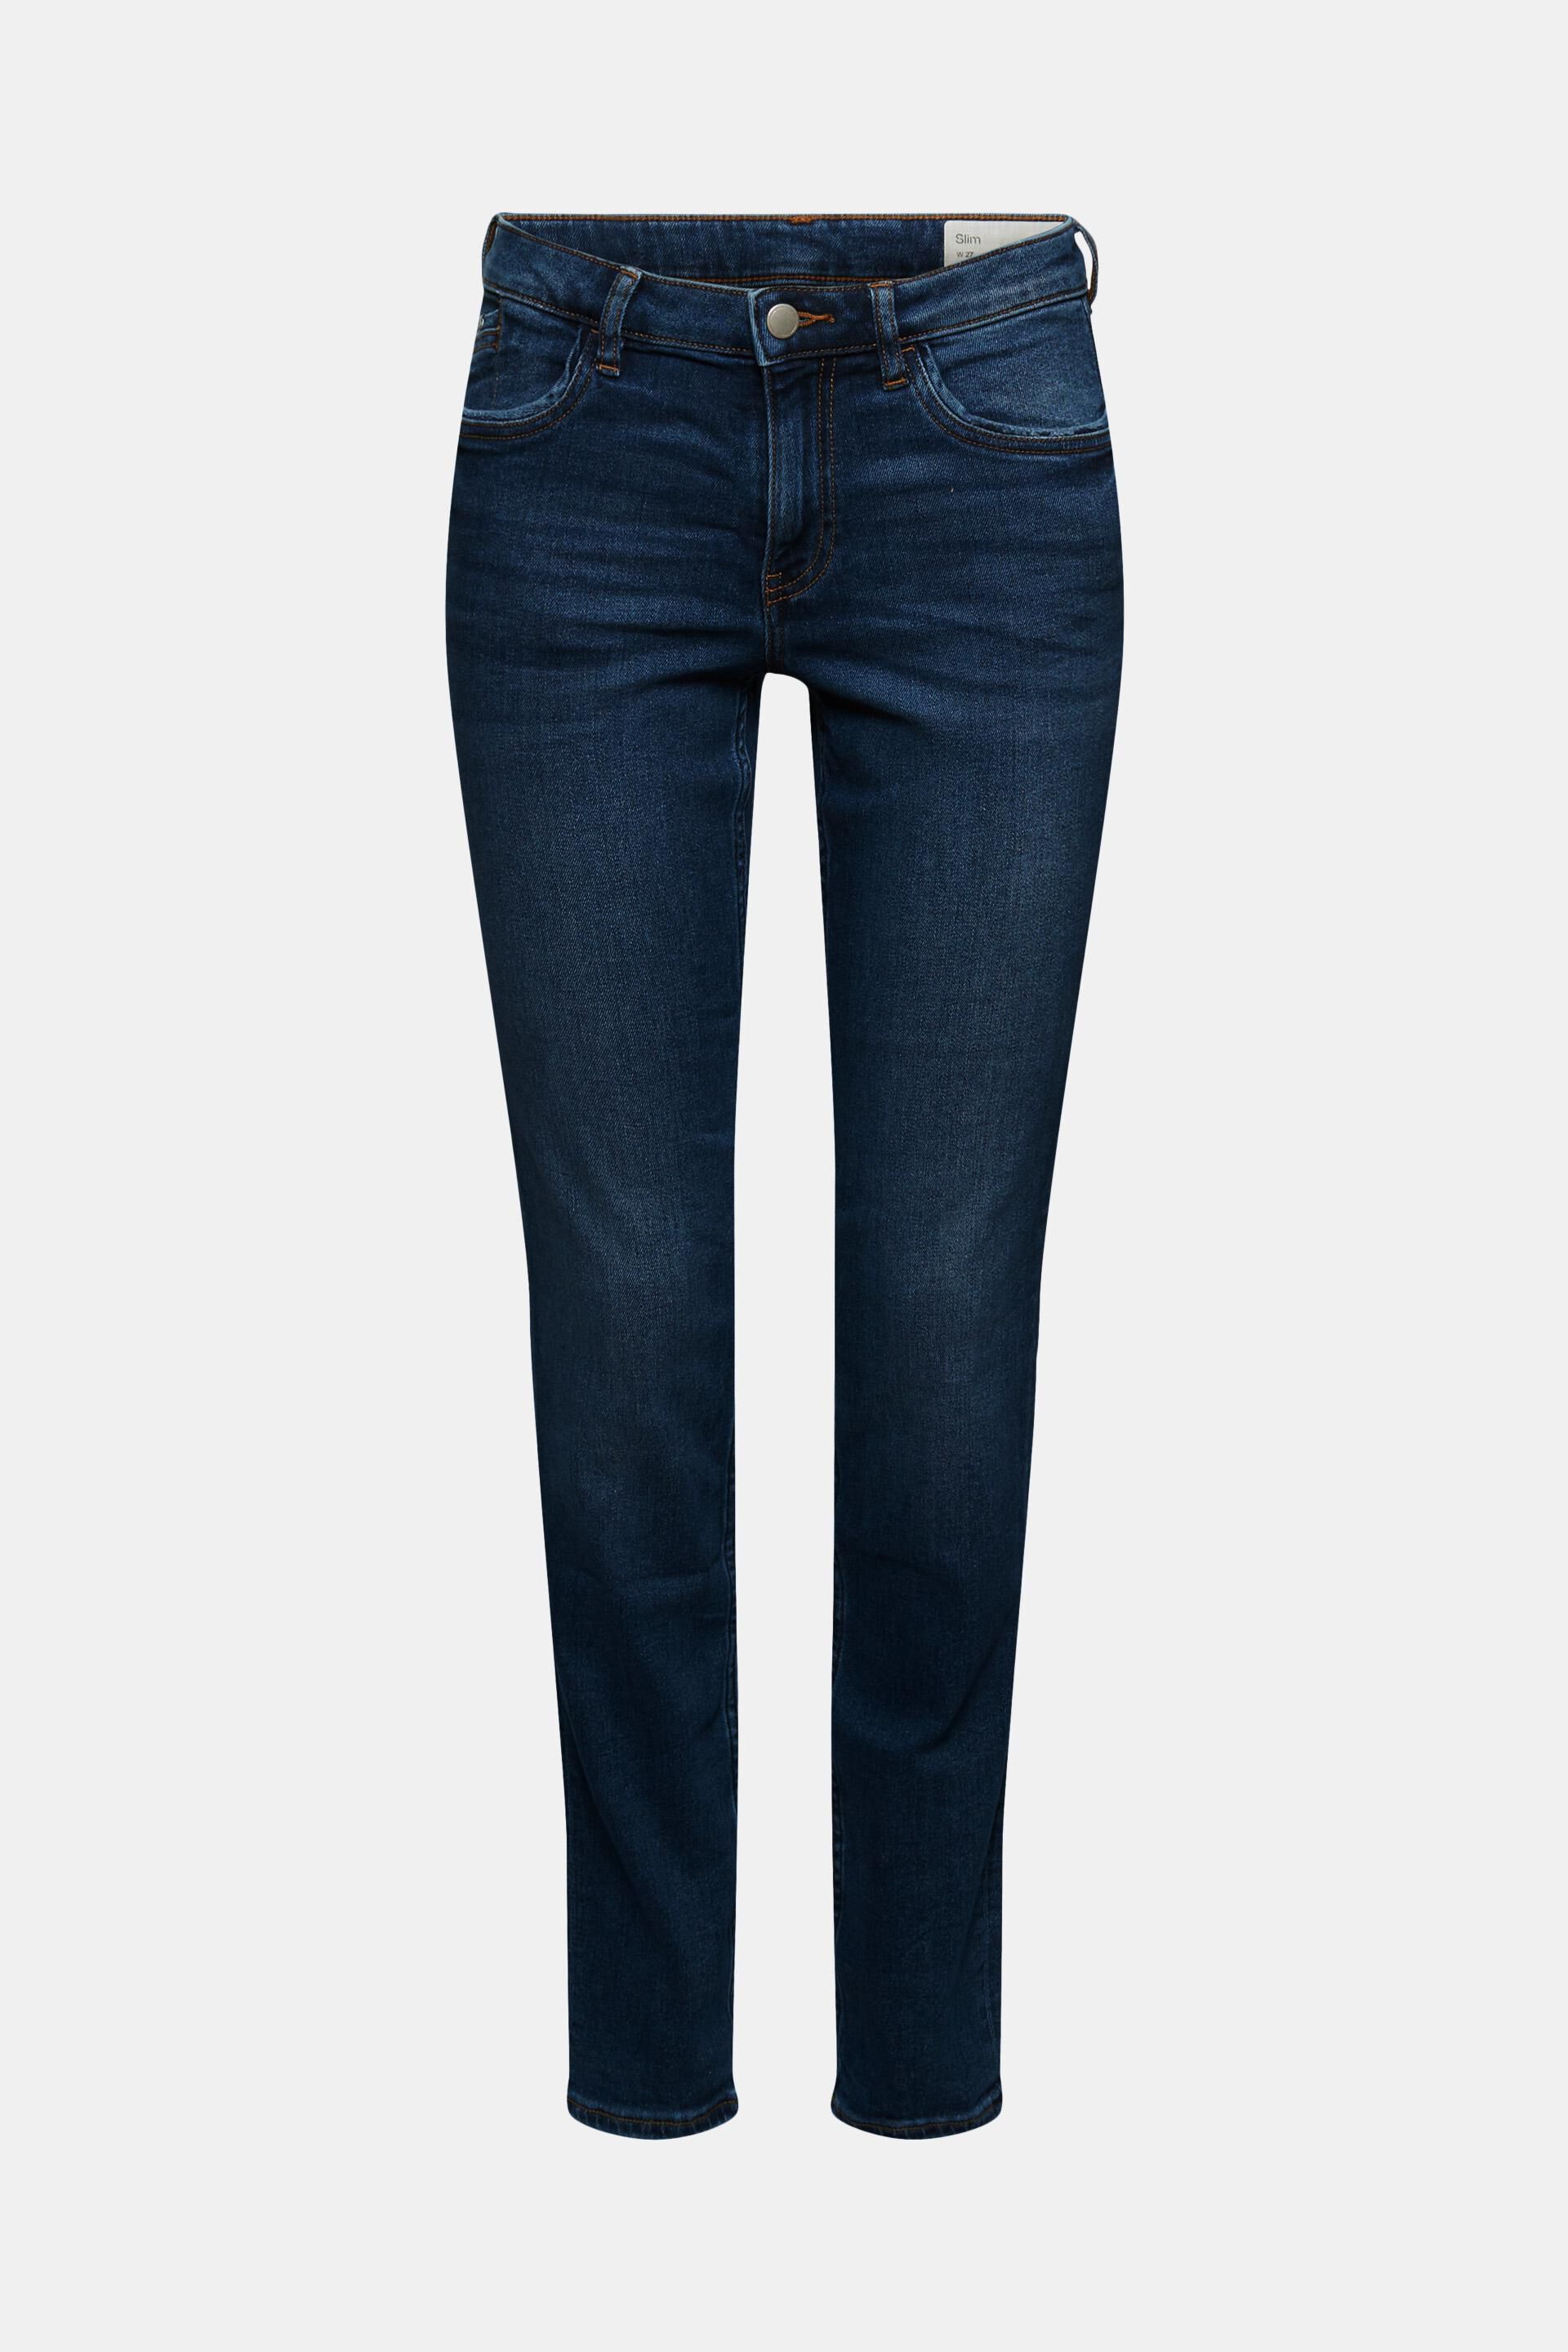 55% di sconto 011ee1b303 JeansEsprit in Denim di colore Blu Donna Abbigliamento da Jeans da Jeans skinny 